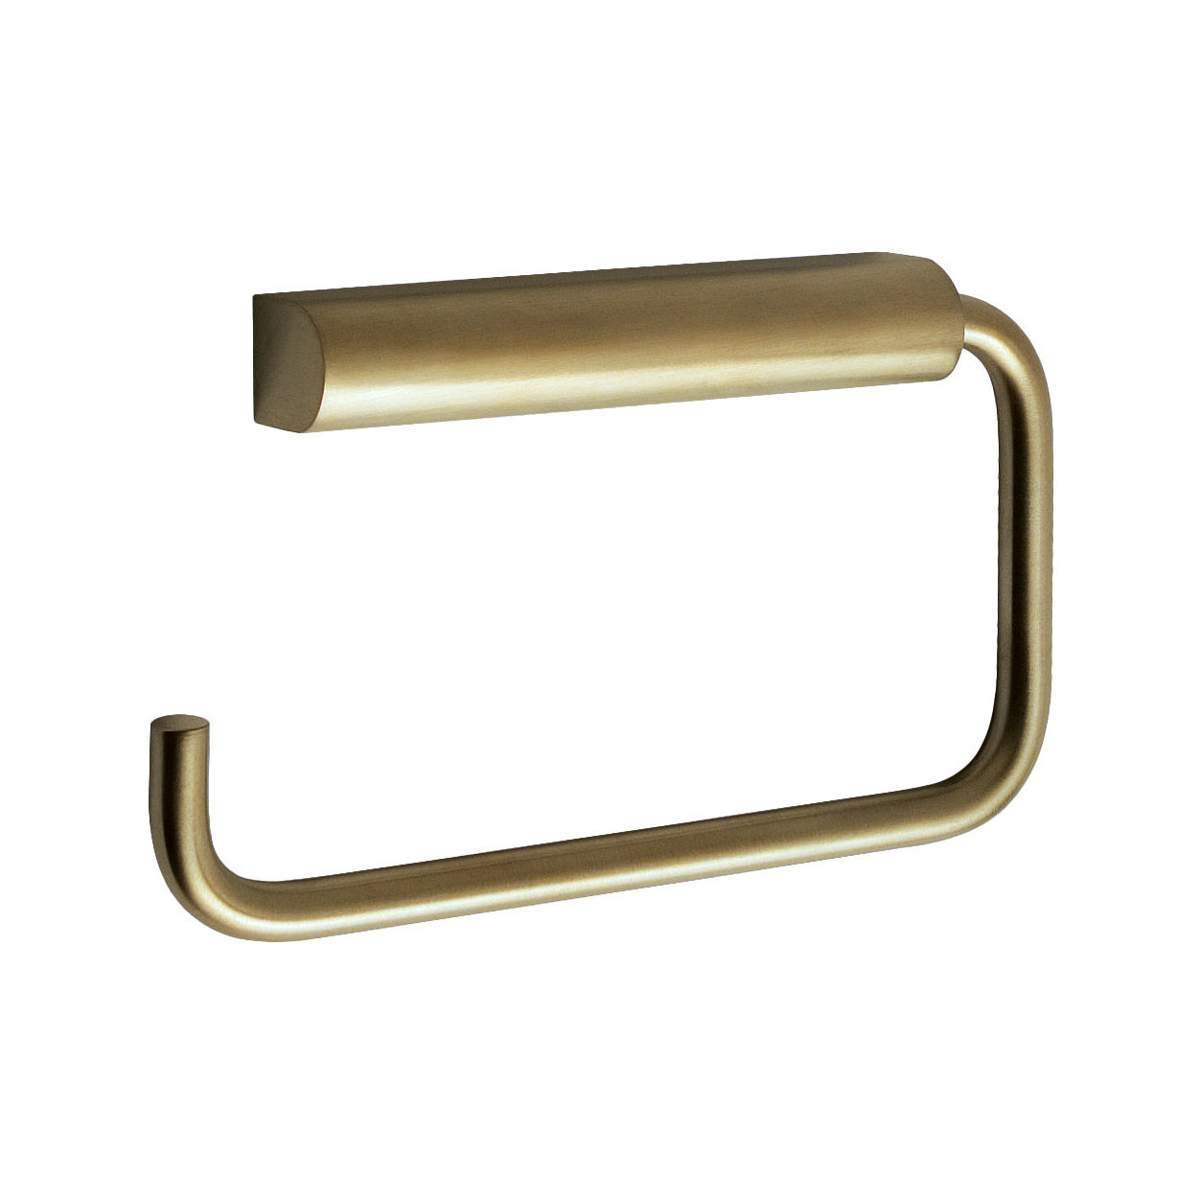 JTP Vos Brushed Brass Toilet Roll Holder - 23251BBR